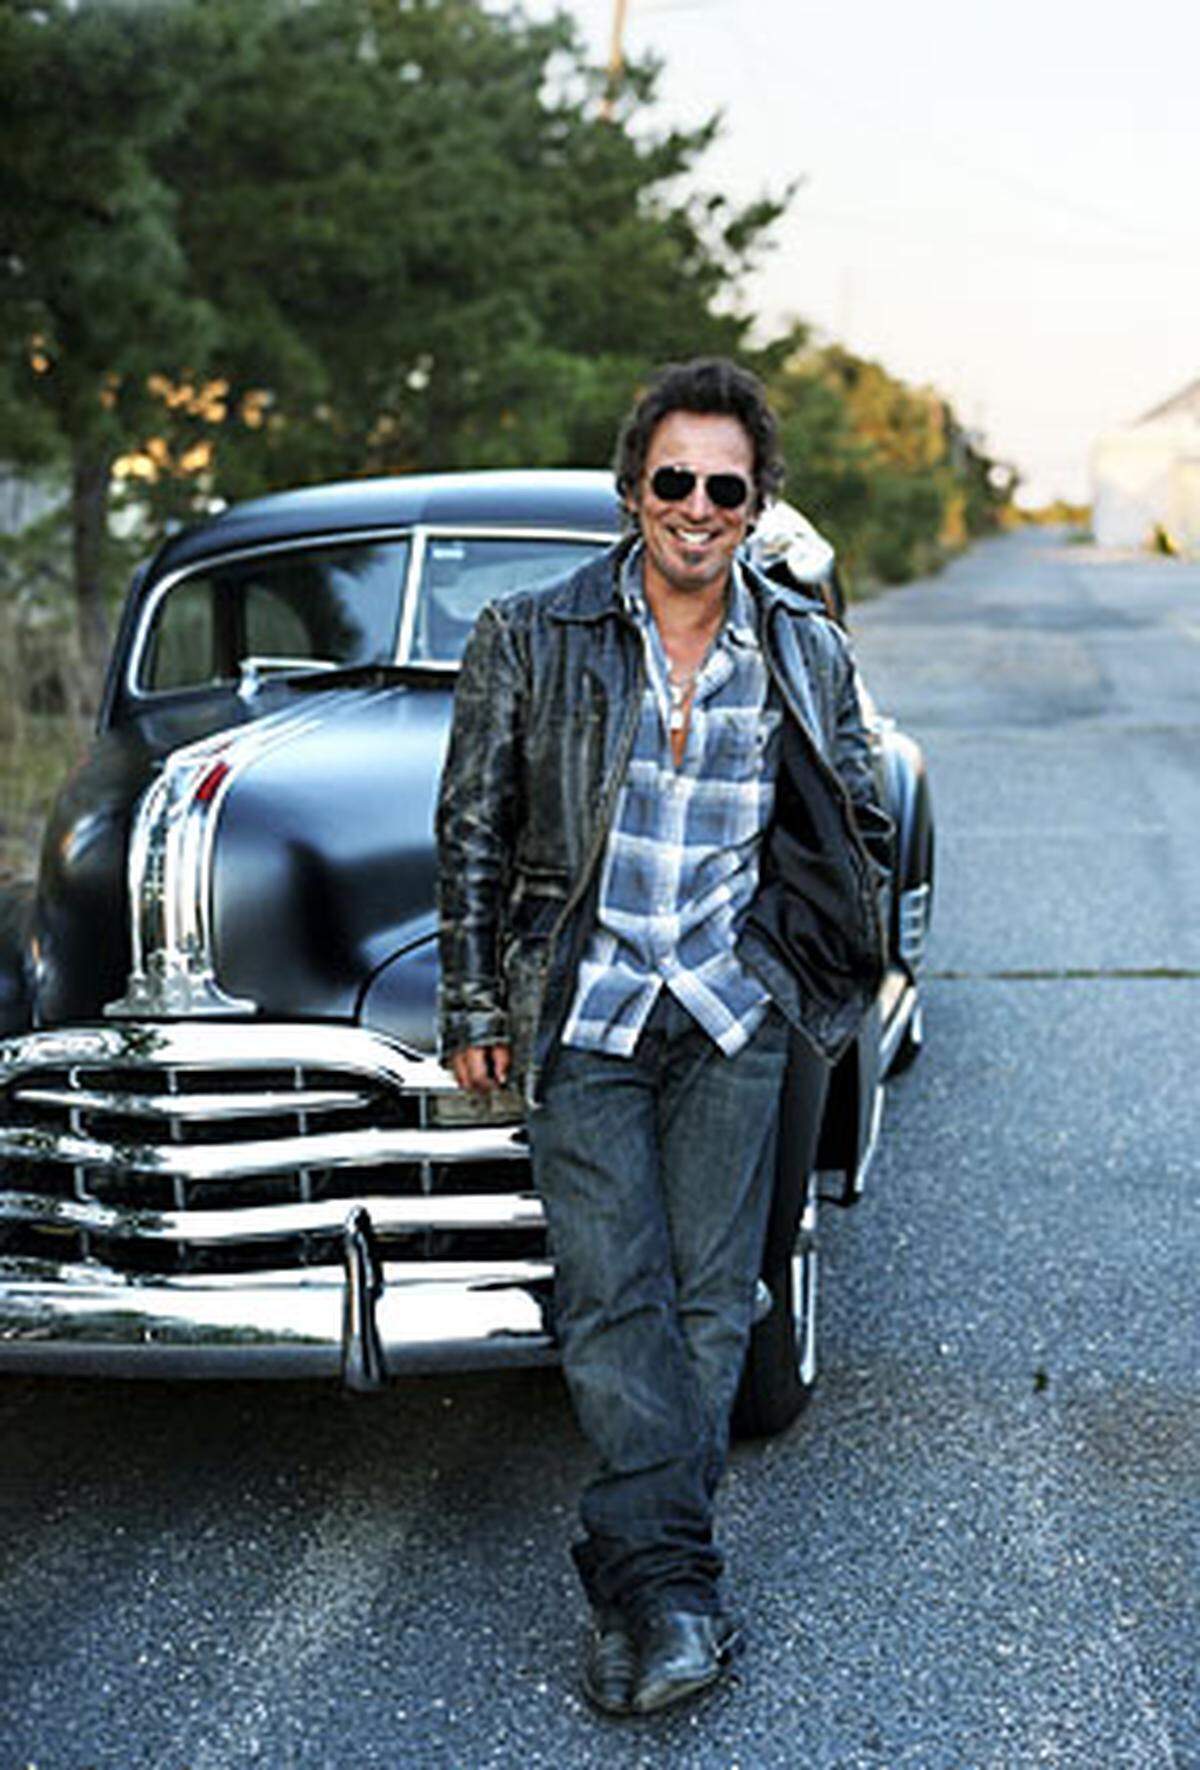 Rockmusiker Bruce Springsteen ist im Pensionsalter angekommen. Doch, dass der am 23. September 1949 in New Jersey geborene Working Class Hero jetzt wirklich kürzer treten wird, ist kaum anzunehmen.  Durch seinen Hit "Born in the U.S.A." - den Springsteen anfänglich aus Unsicherheit gar nicht veröffentlichen wollte - 1984 endgültig zum weltweiten Superstar geworden, hat er bis heute nichts von seiner Anziehungskraft verloren.